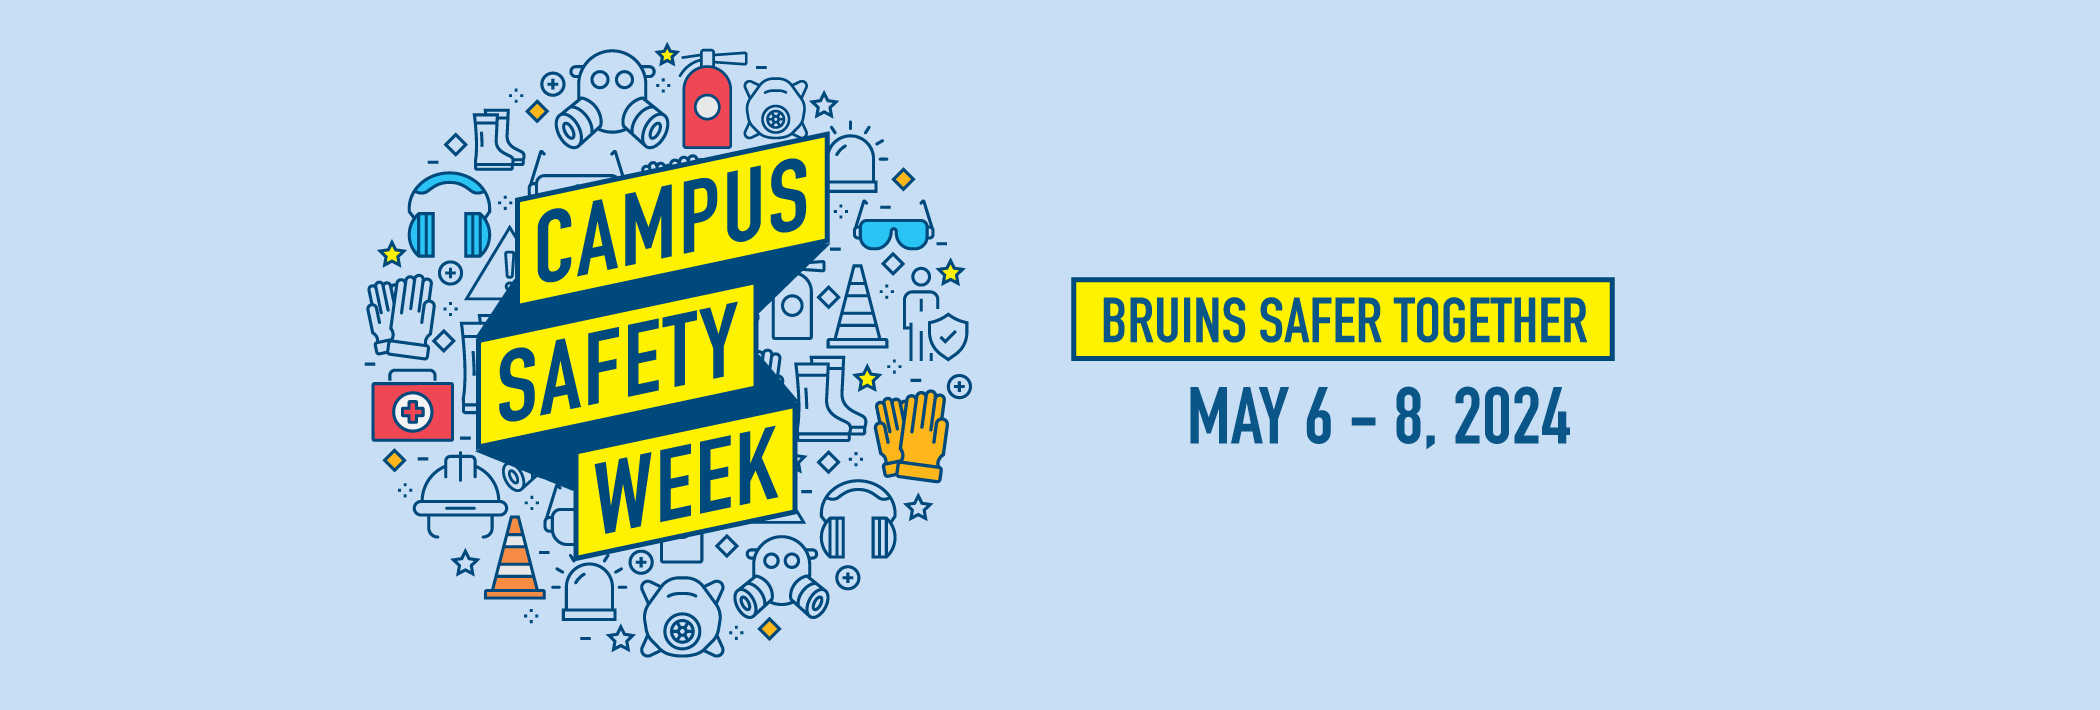 Campus Safety Week, Bruins Safer Together, May 6-8, 2024